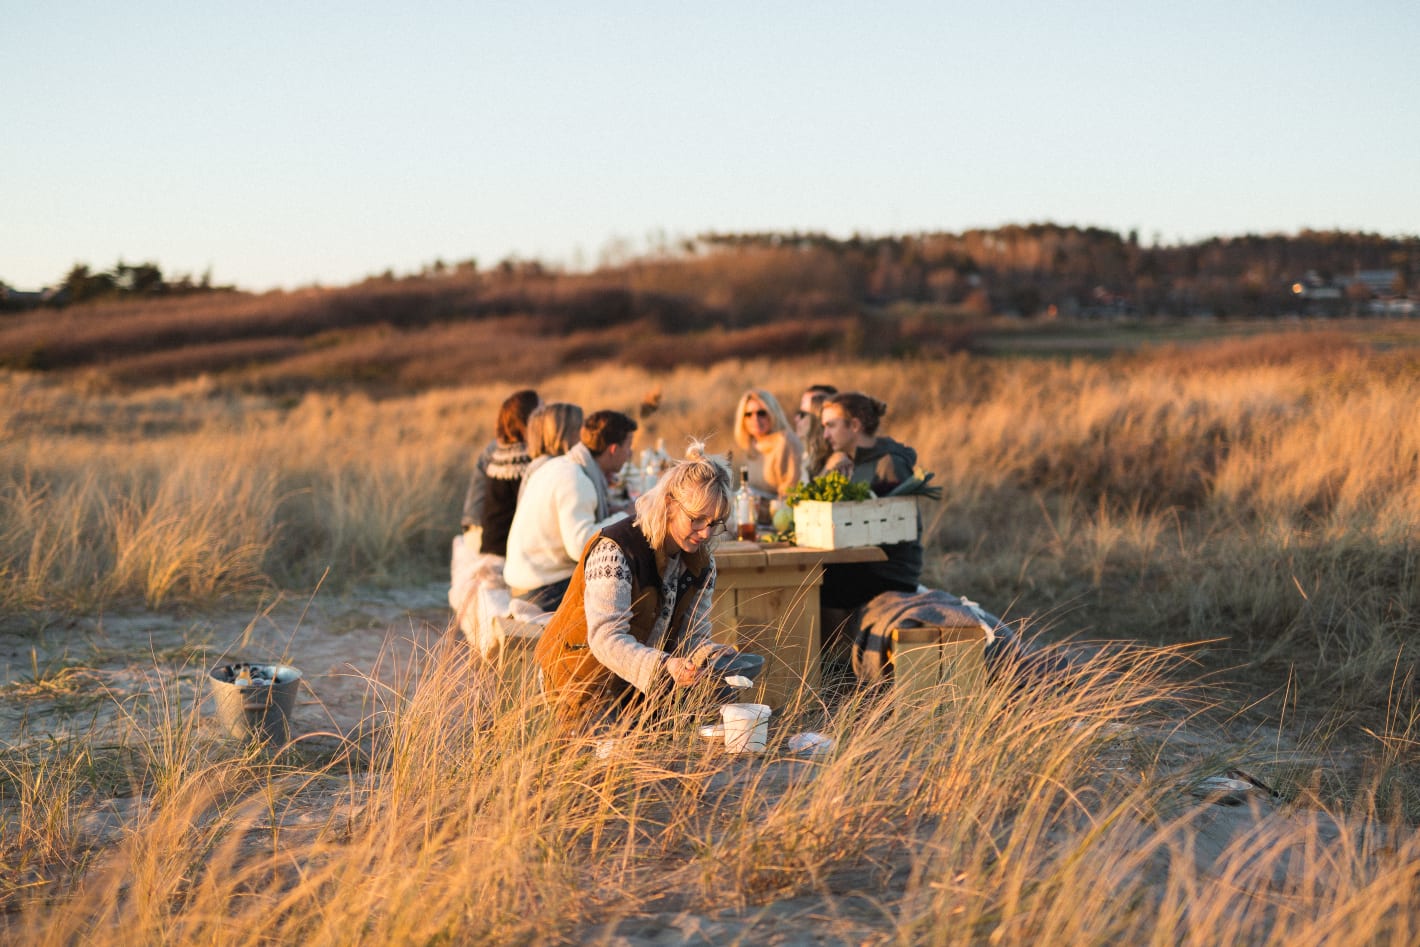 Ресторан для гурманов, где можно самому выбрать продукты для блюд, открылся на песчаном берегу Халланд на юго-западе Швеции